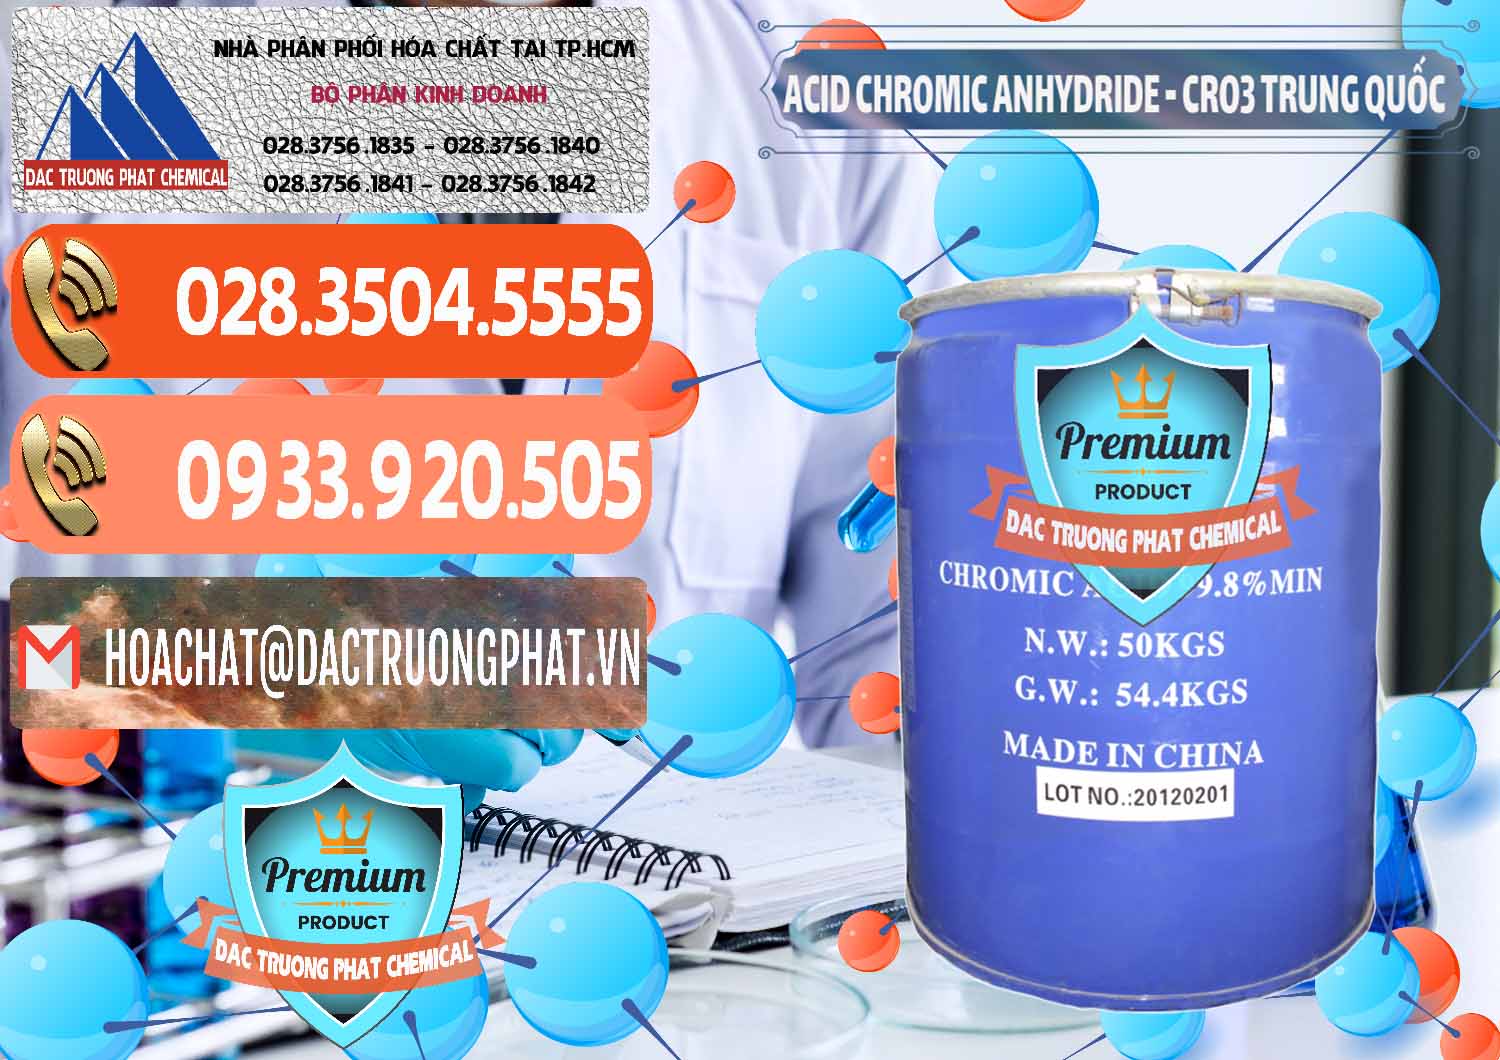 Đơn vị chuyên kinh doanh ( bán ) Acid Chromic Anhydride - Cromic CRO3 Trung Quốc China - 0007 - Nơi chuyên kinh doanh & phân phối hóa chất tại TP.HCM - hoachatmientay.com